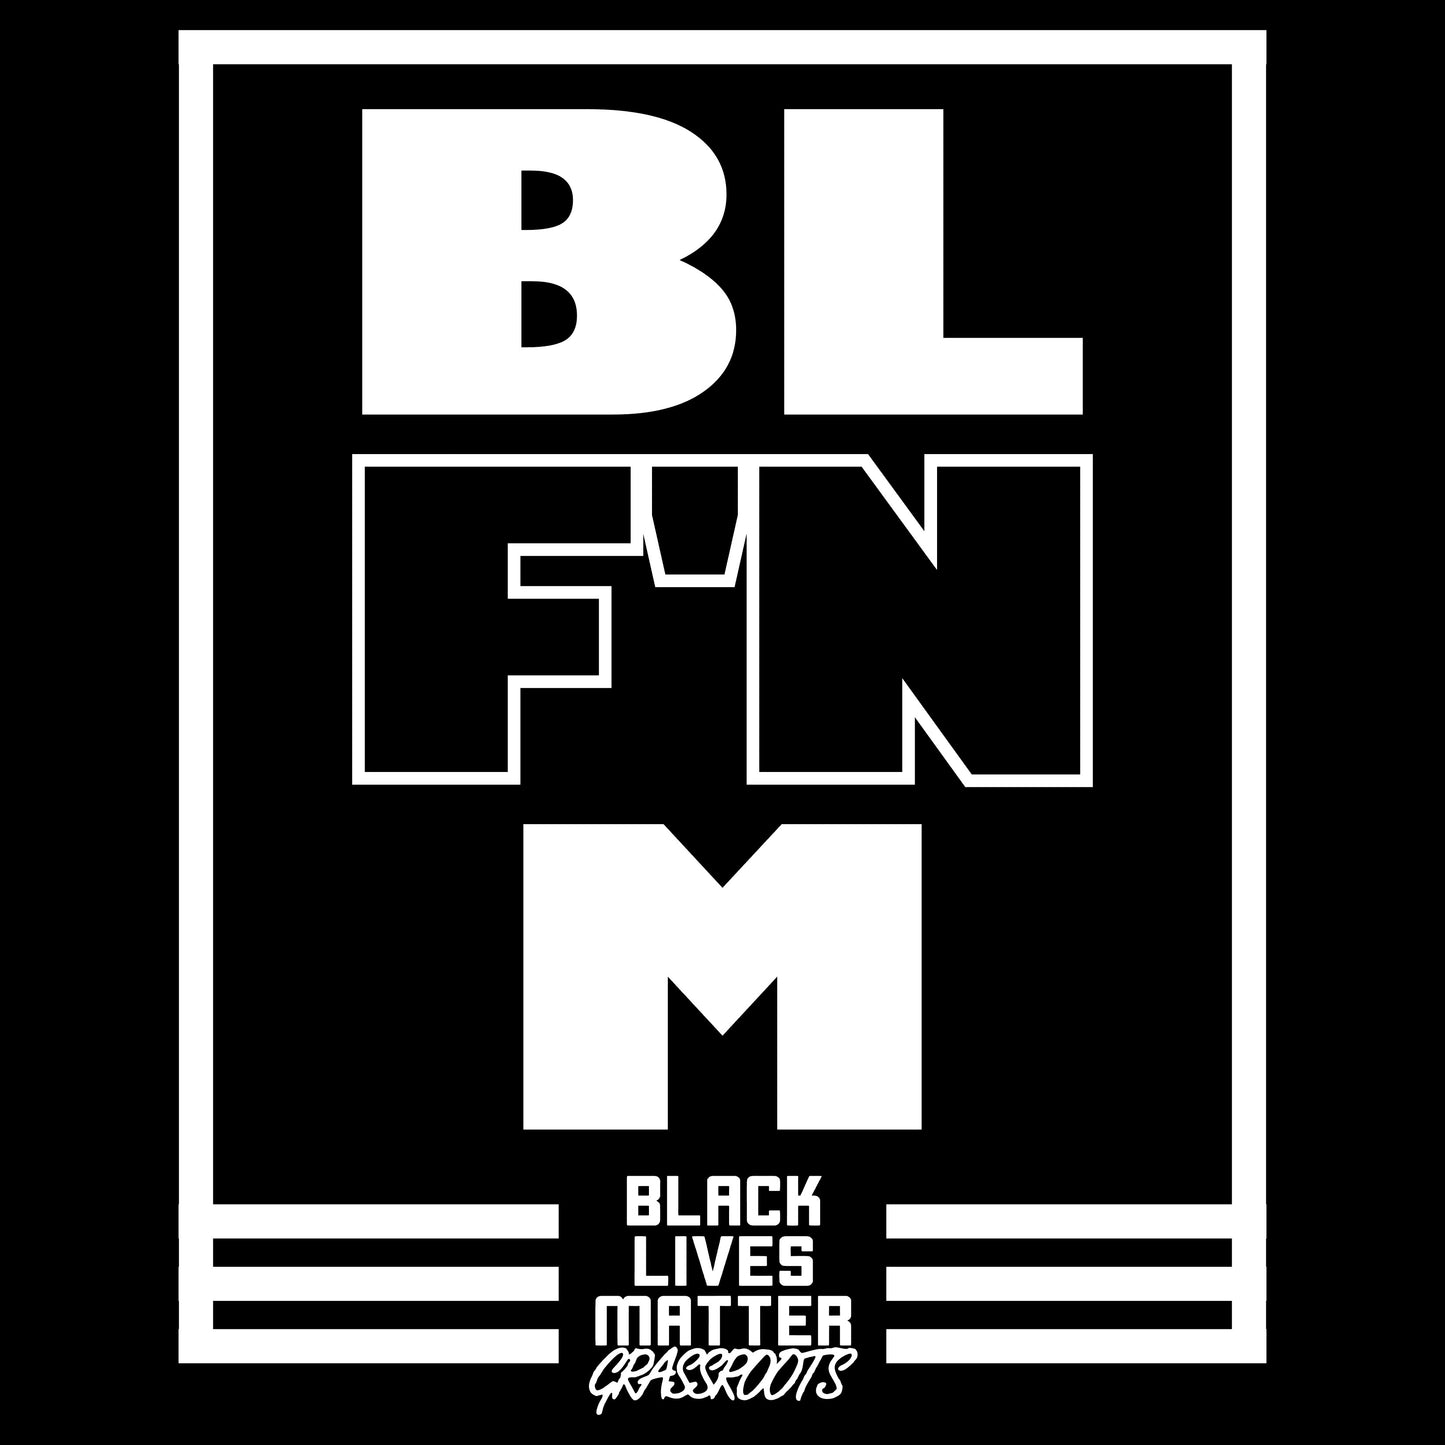 Black Lives Matter Grassroots BLF'NM T-Shirt